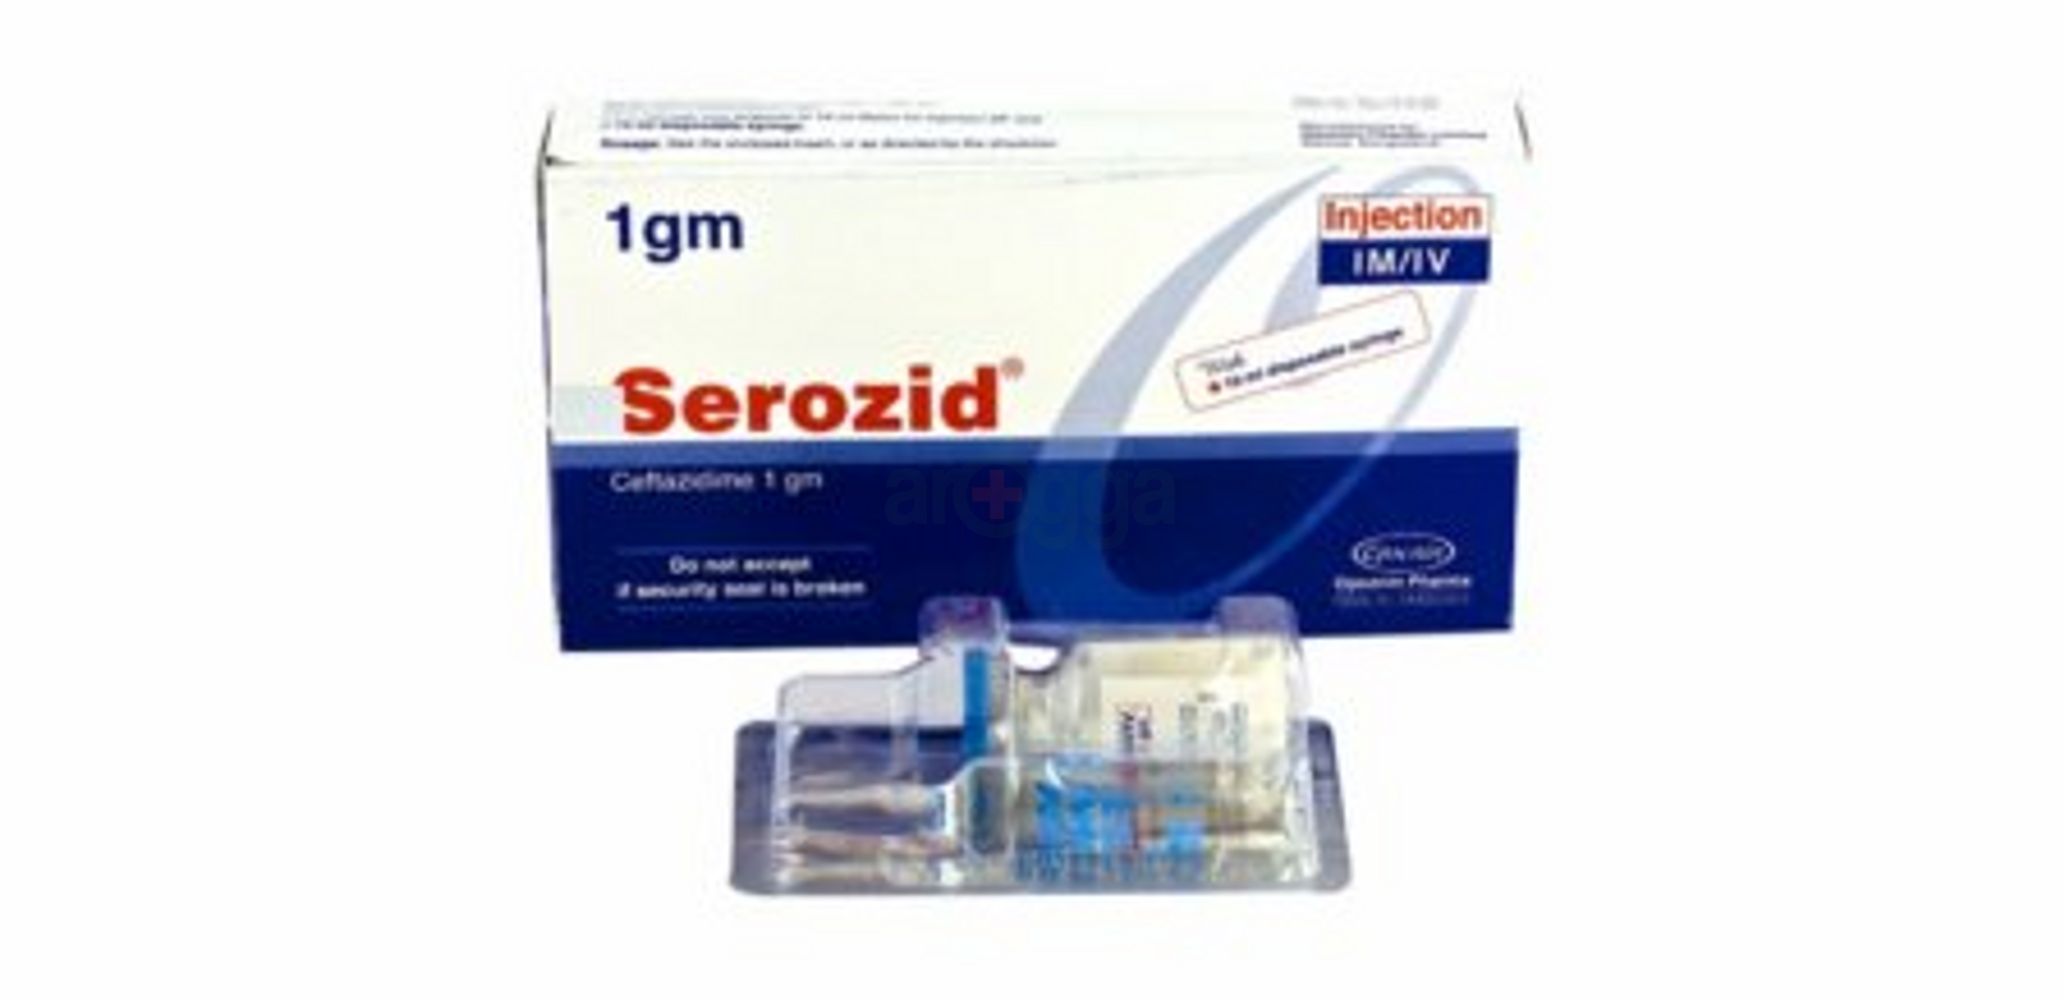 Serozid IV/IM